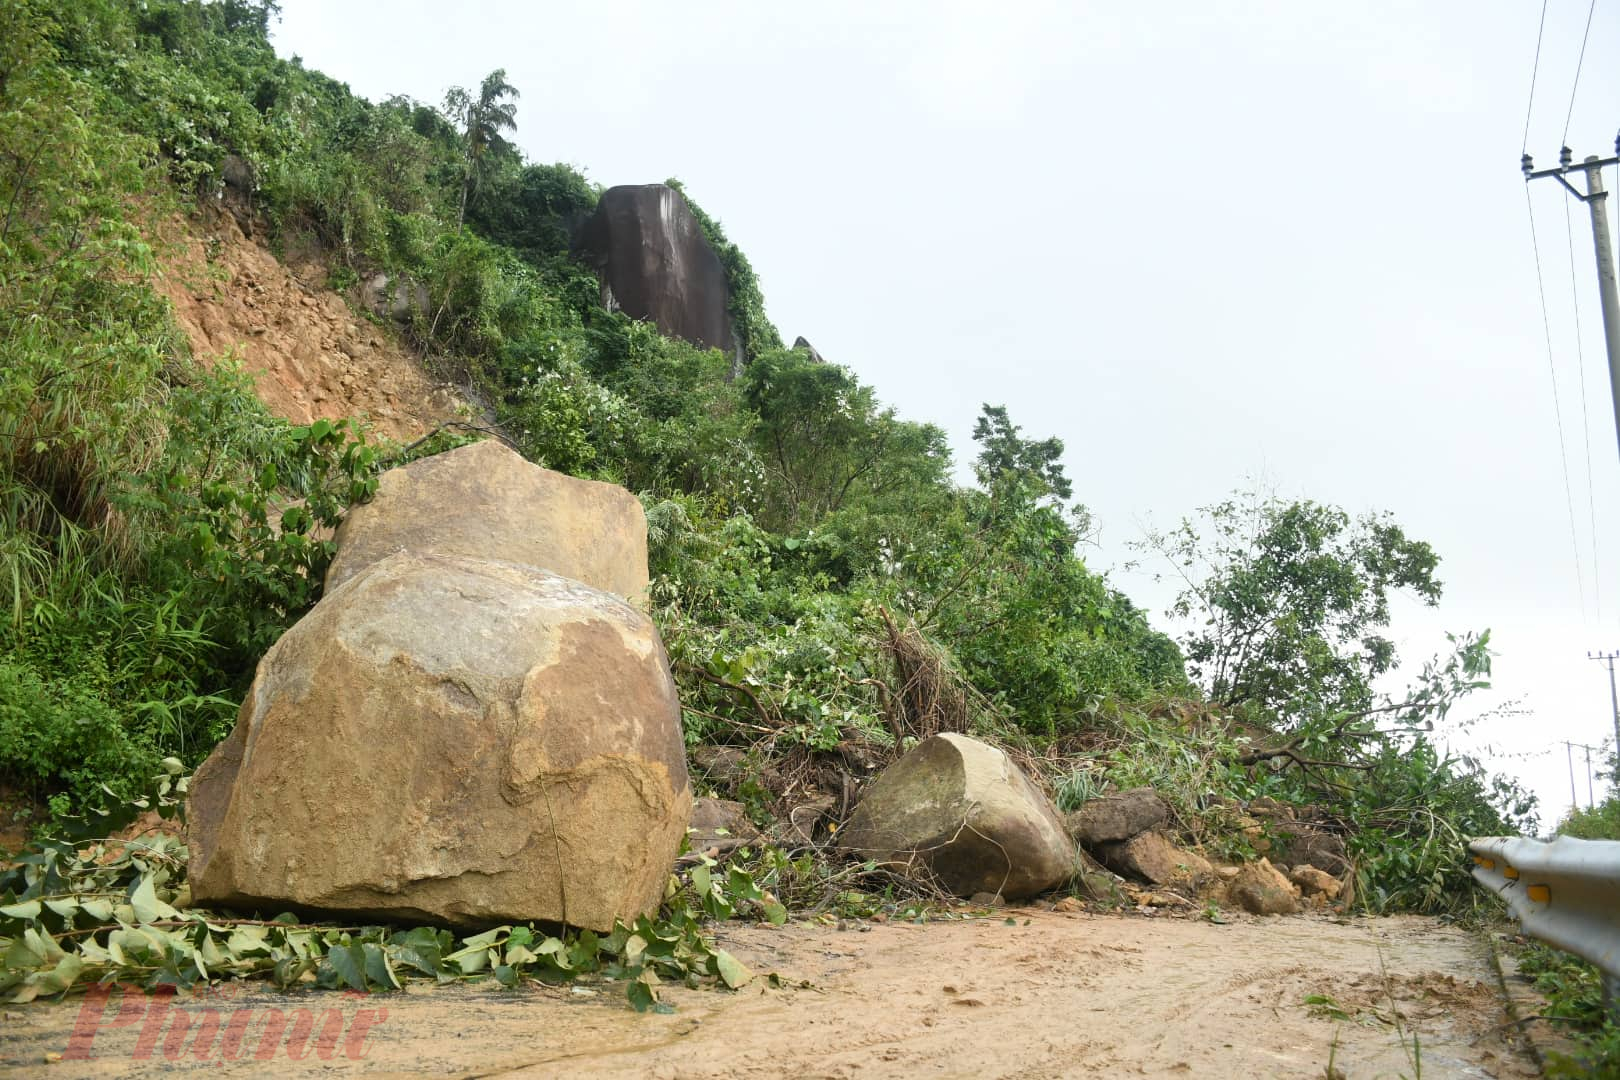 Đèo Hải Vân có khoảng 10 điểm sạt lở, vị trí nặng nhất nằm gần đỉnh đèo, vị trí tiếp giáp với tỉnh Thừa Thiên Huế.